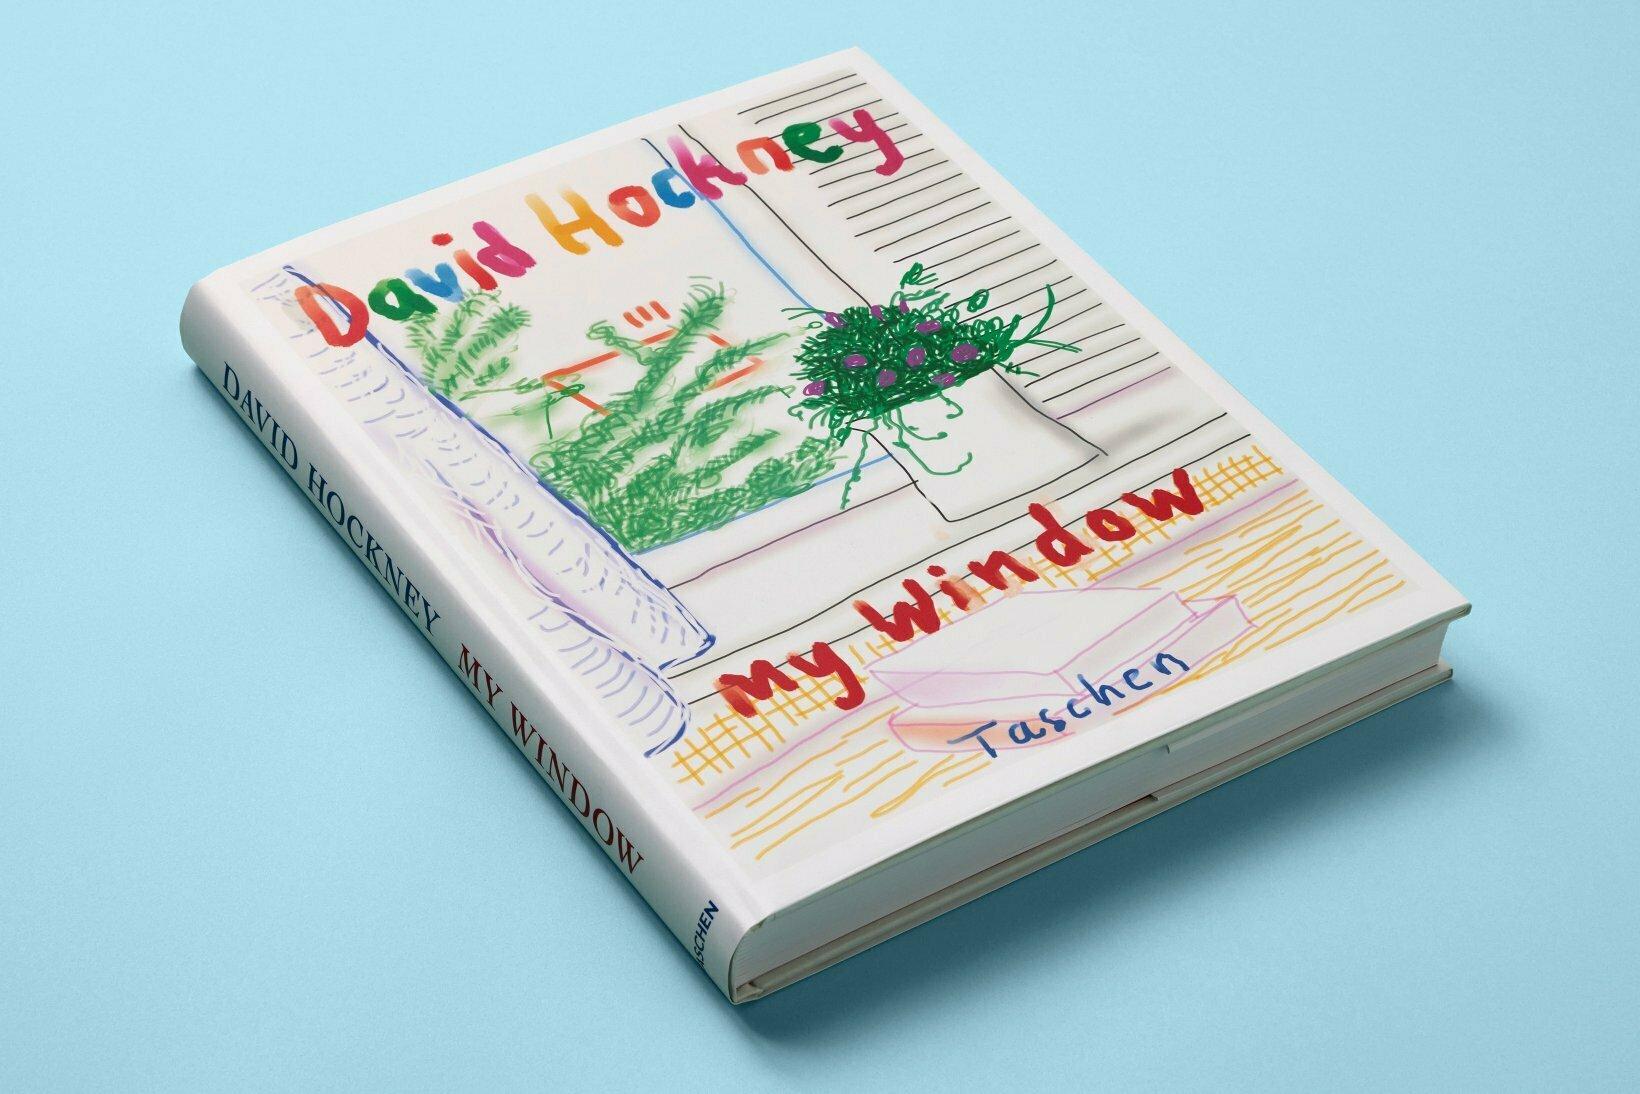 Fenster zur Welt.

David Hockneys Künstlerbuch in einer unlimitierten XL-Edition.

Als David Hockney das iPhone als künstlerisches Medium entdeckte, eröffnete es ihm völlig neue Möglichkeiten für seine Kunst. Im Frühjahr 2009 fertigte er seine